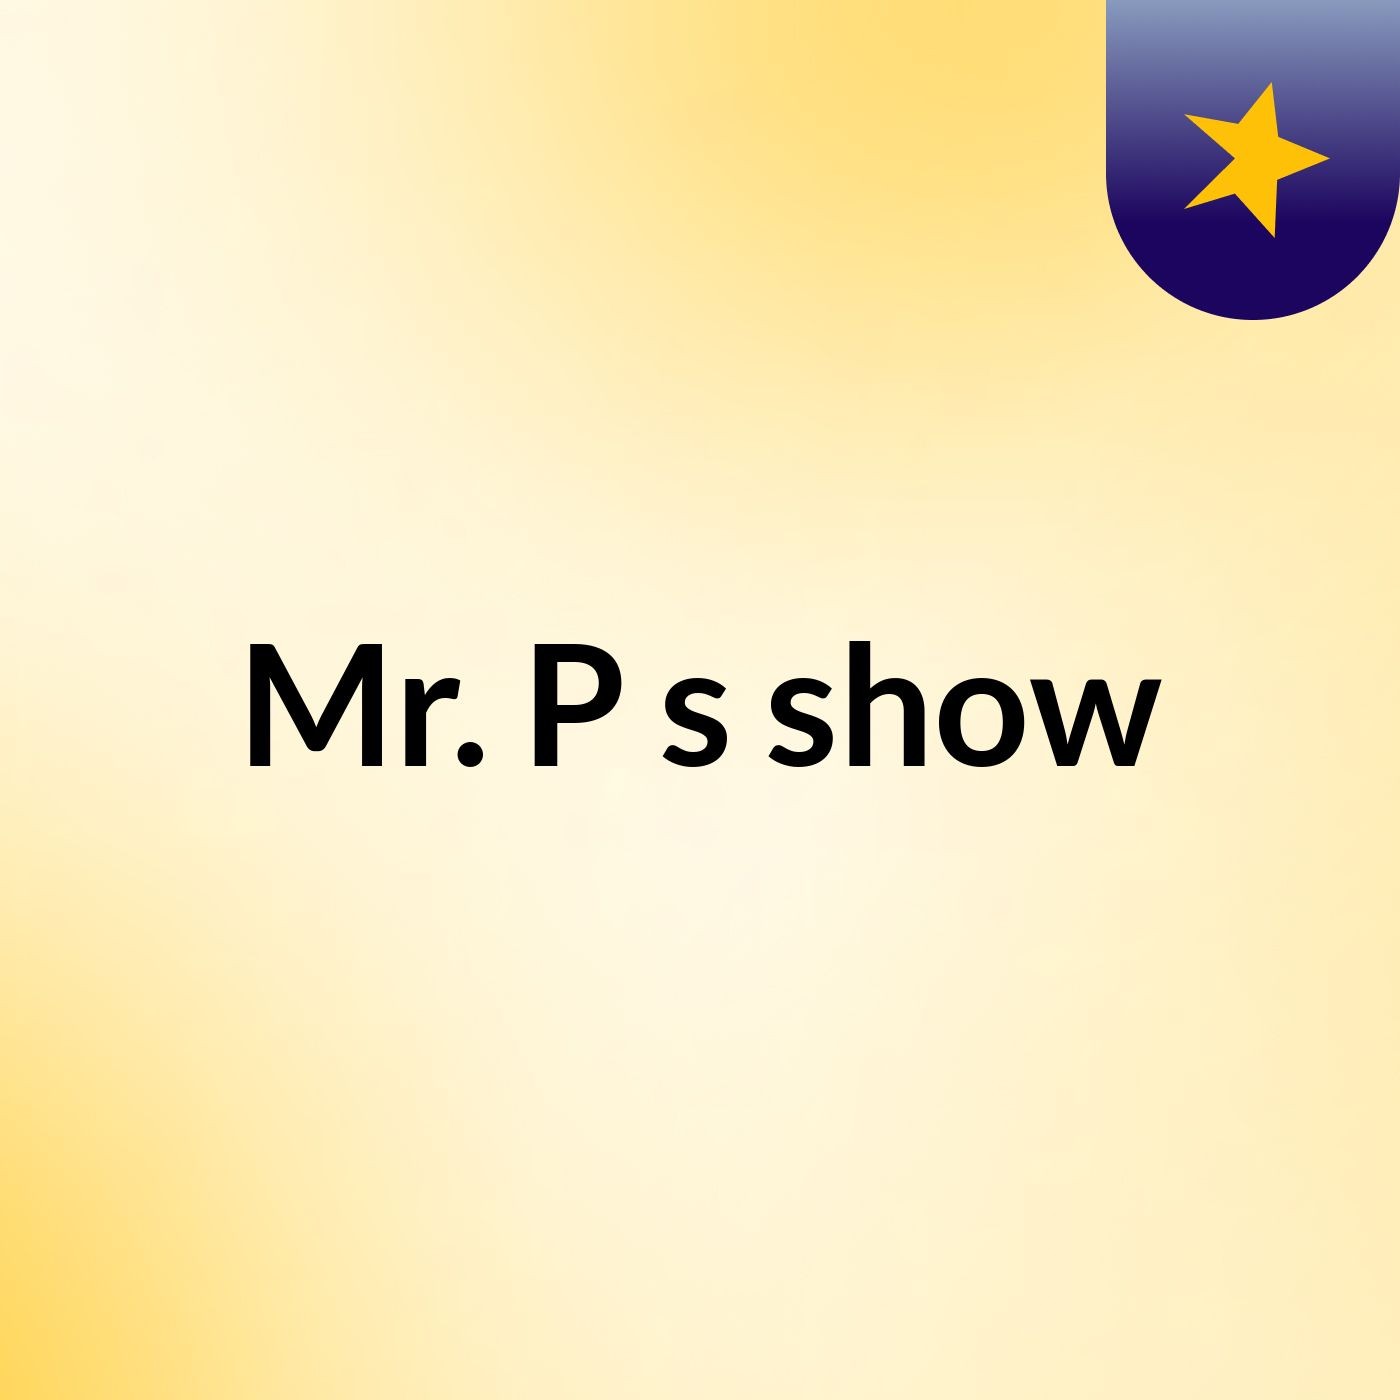 Mr. P's show